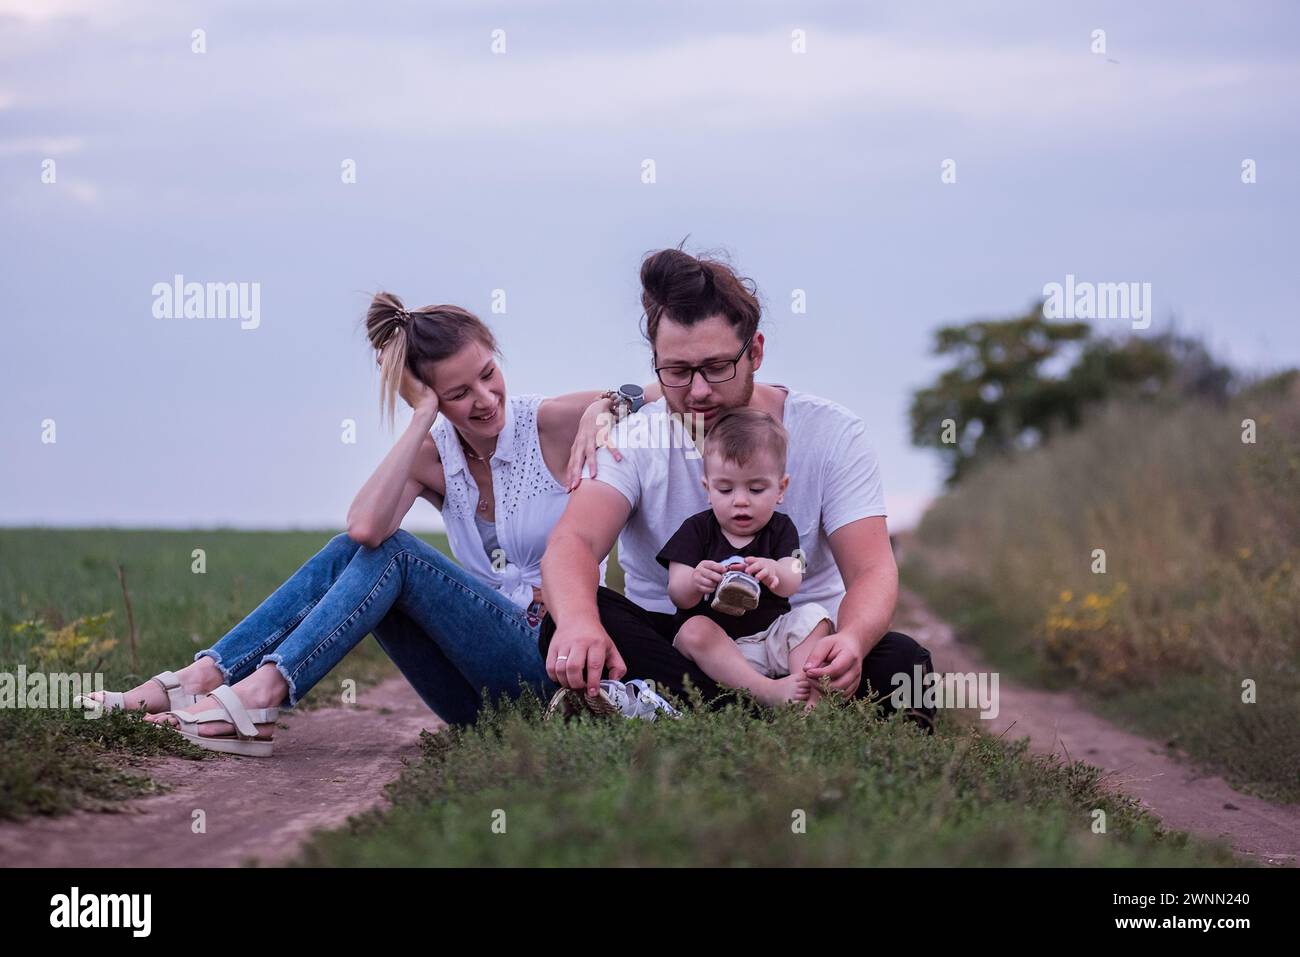 La famiglia Diversity di tre persone gode di momenti tranquilli insieme, seduti lungo i sentieri di campagna in piena luce del giorno, immersi nella natura. Tempo in famiglia a piedi Foto Stock